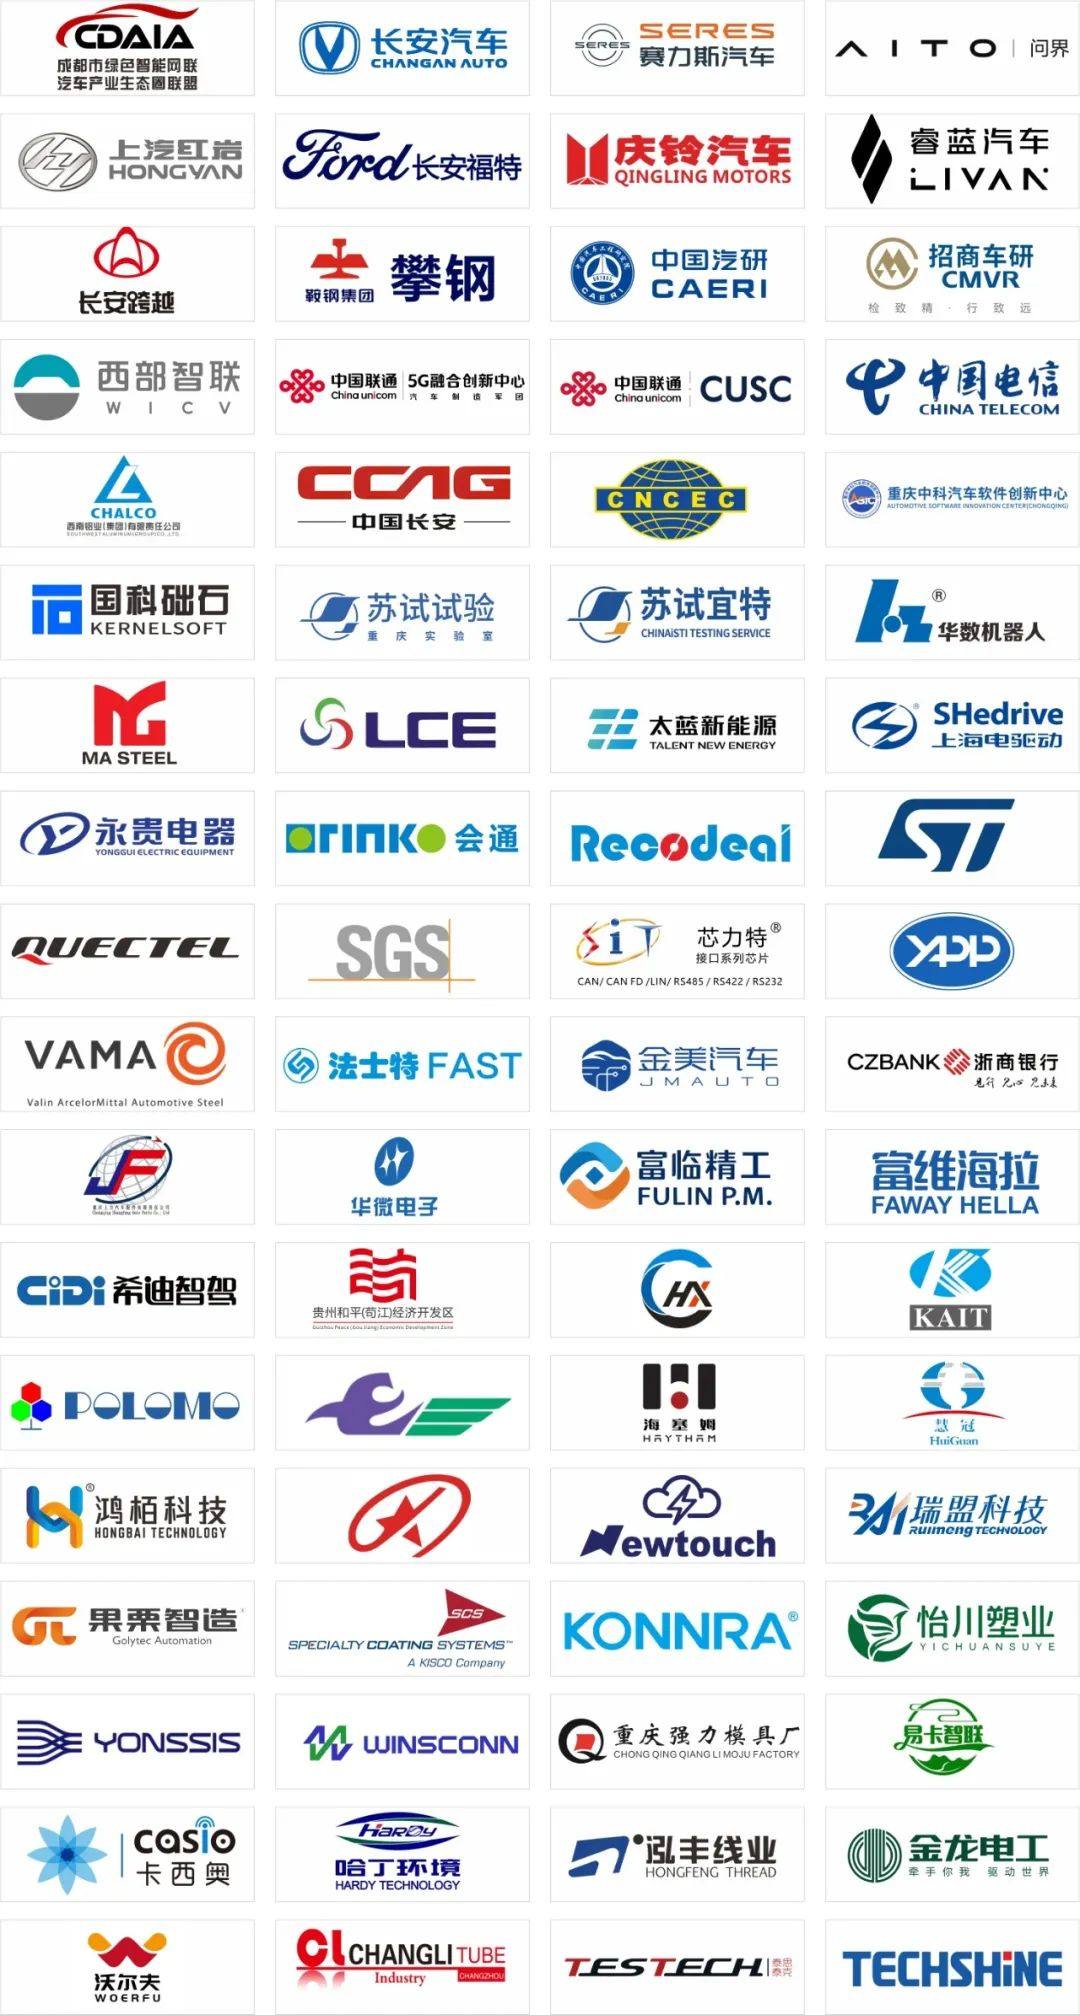 2024中国智能电动汽车科技与供应链博览会将于2024年3.13-15在重庆国博中心举办！